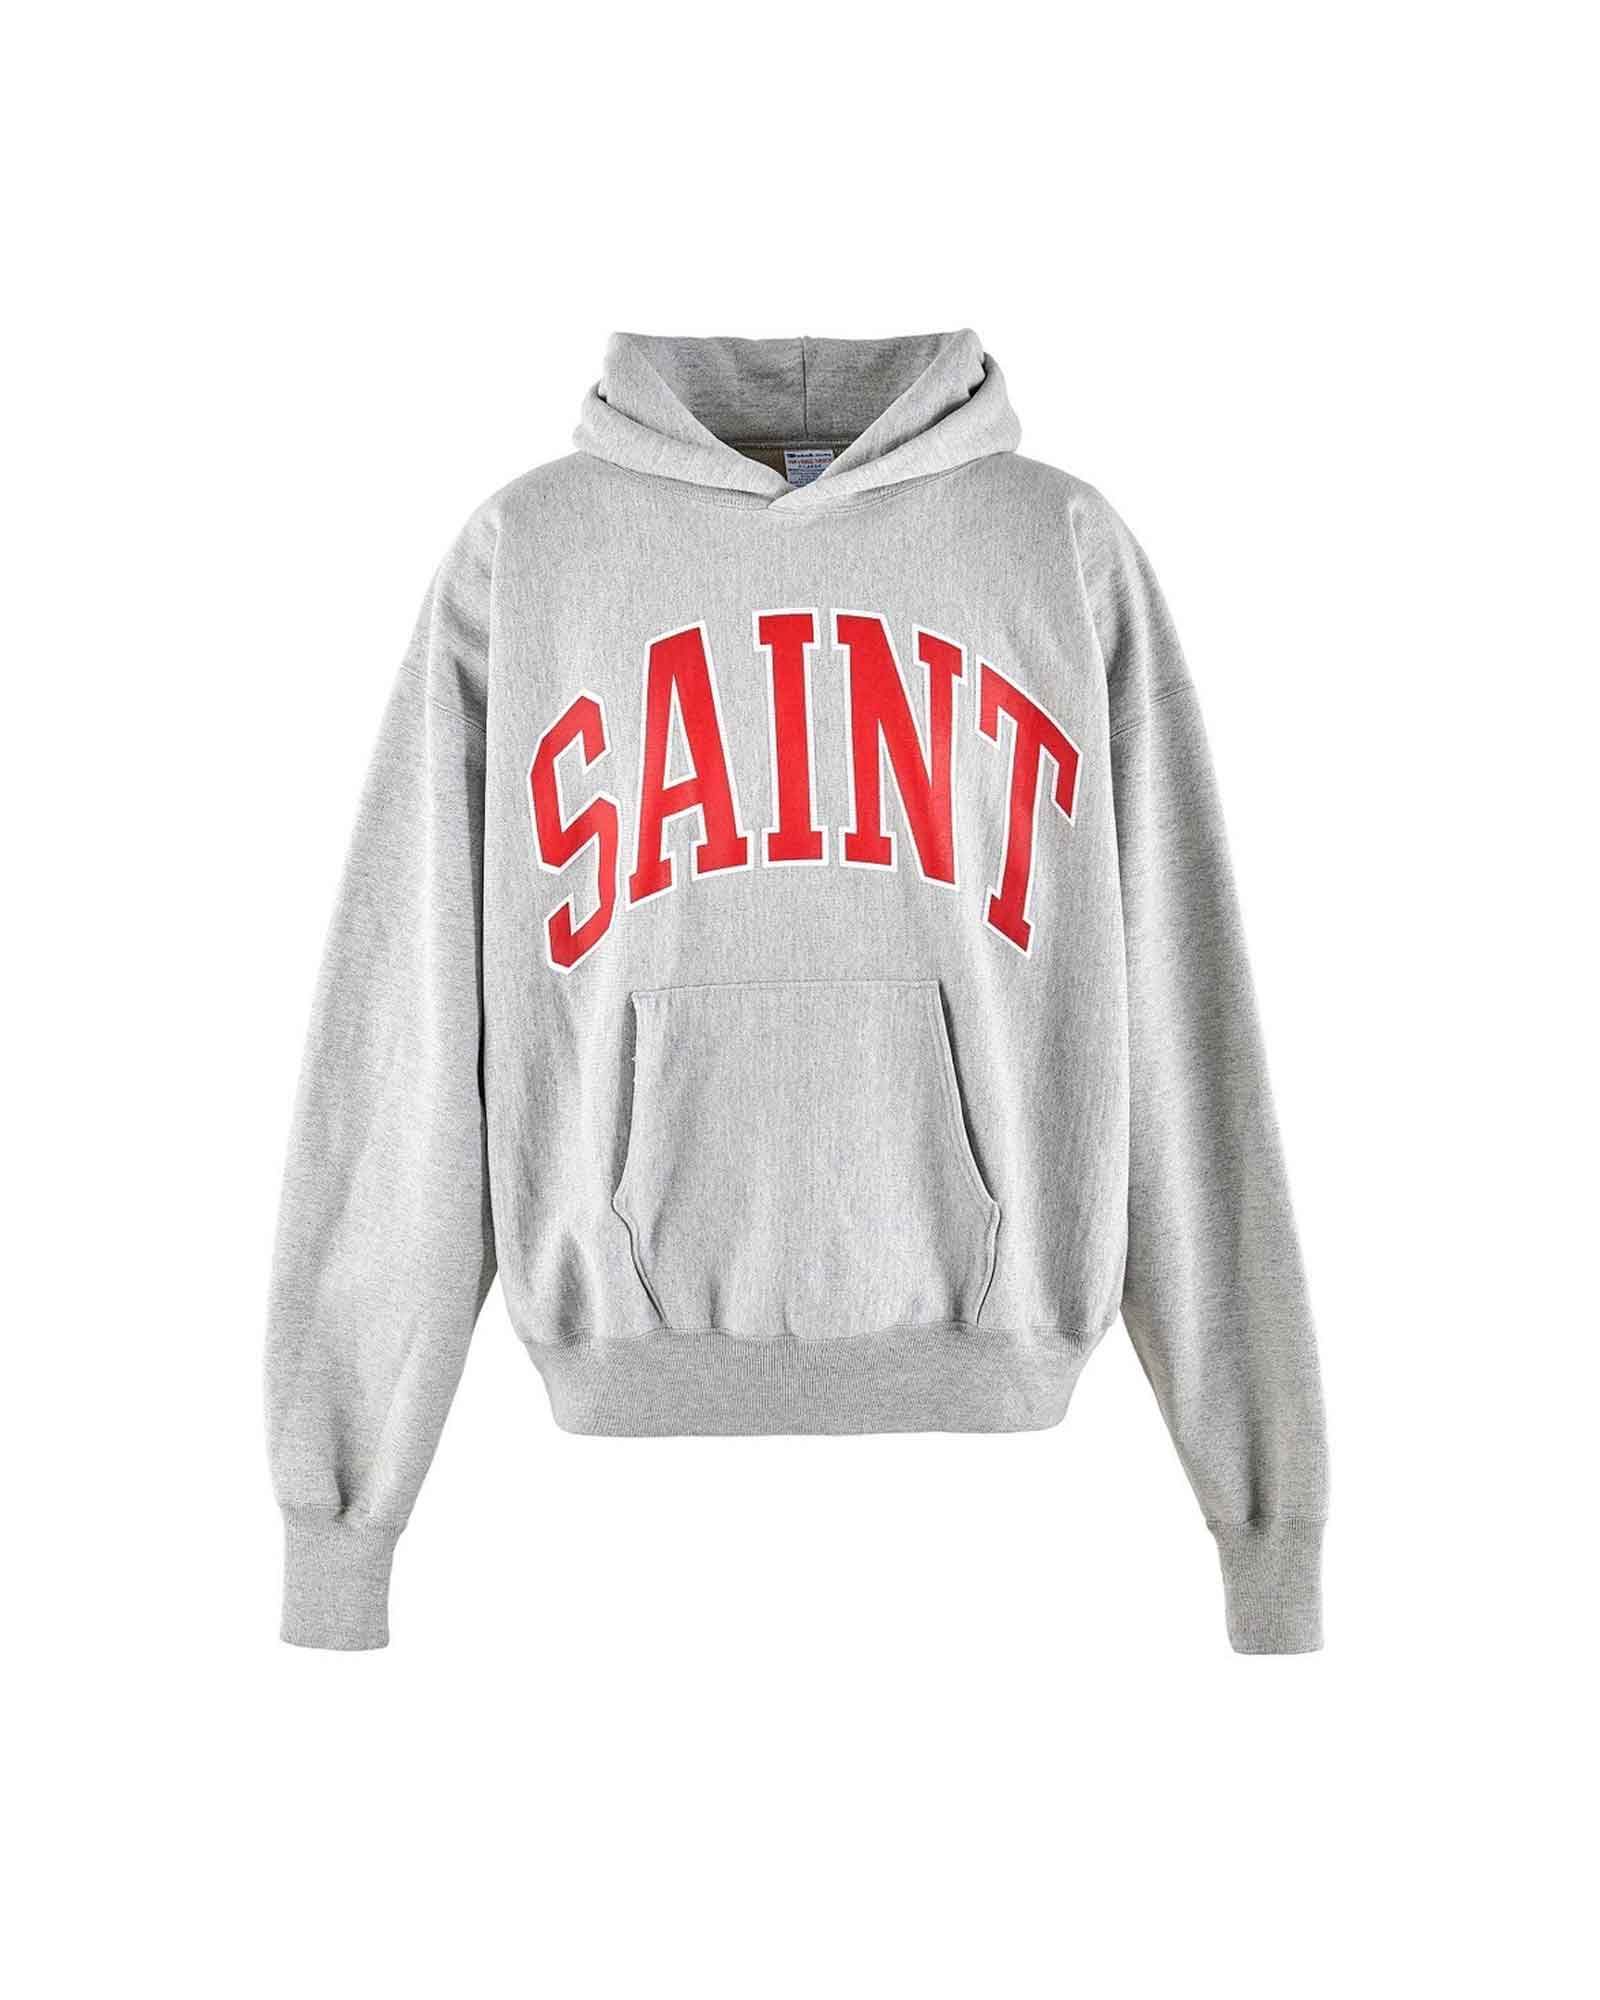 SAINT Mxxxxxx - hoodie/arch saint (プルオーバーパーカー) Black 